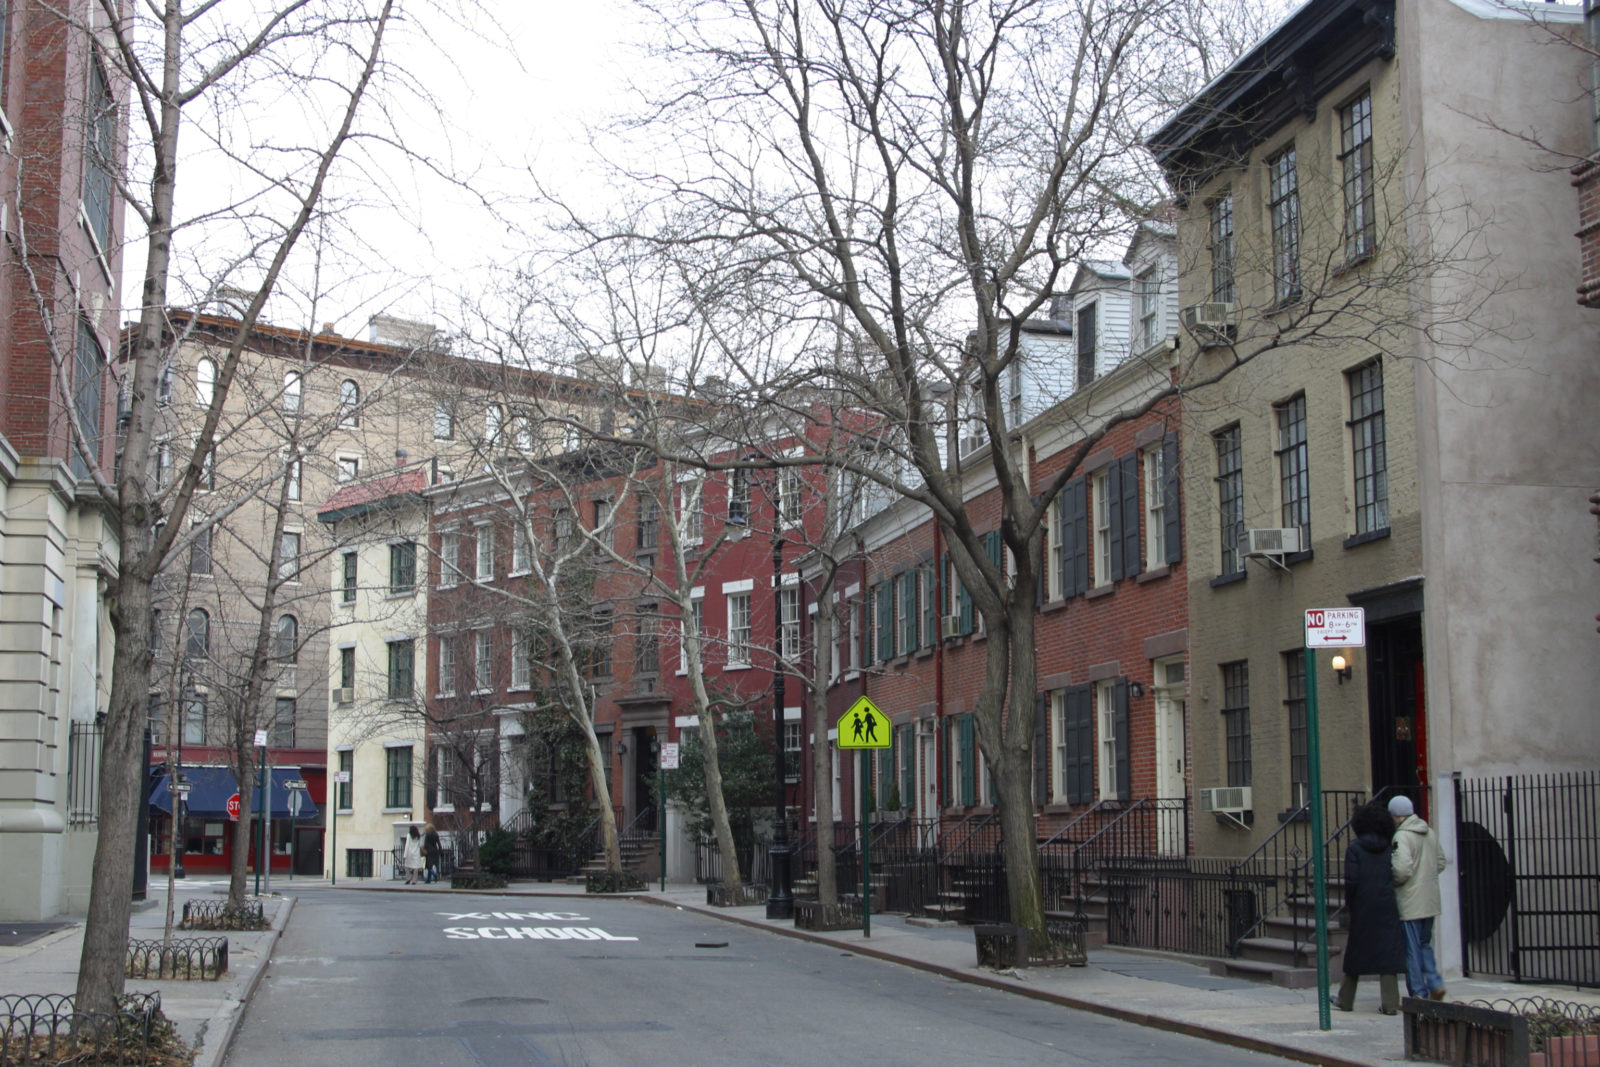 Greenwich Avenue Historic District - Wikipedia